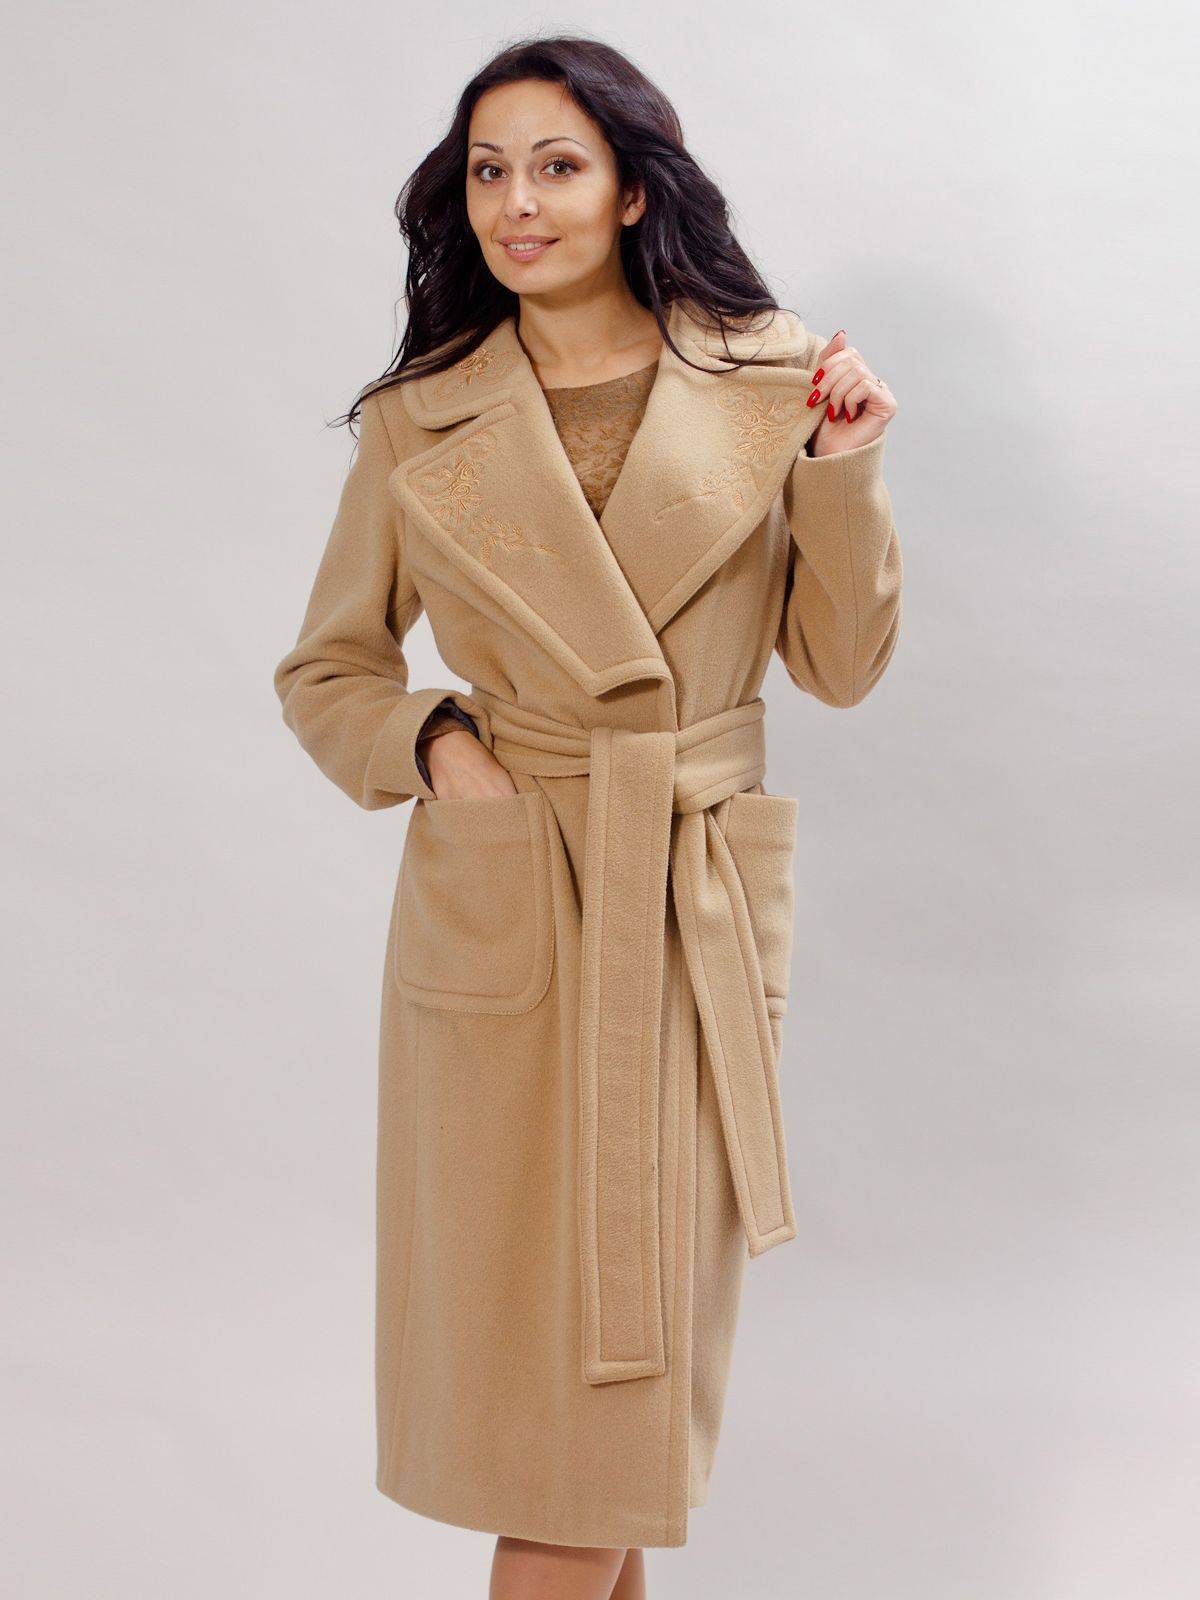 Модное кашемировое пальто на 2019 год (с фото)